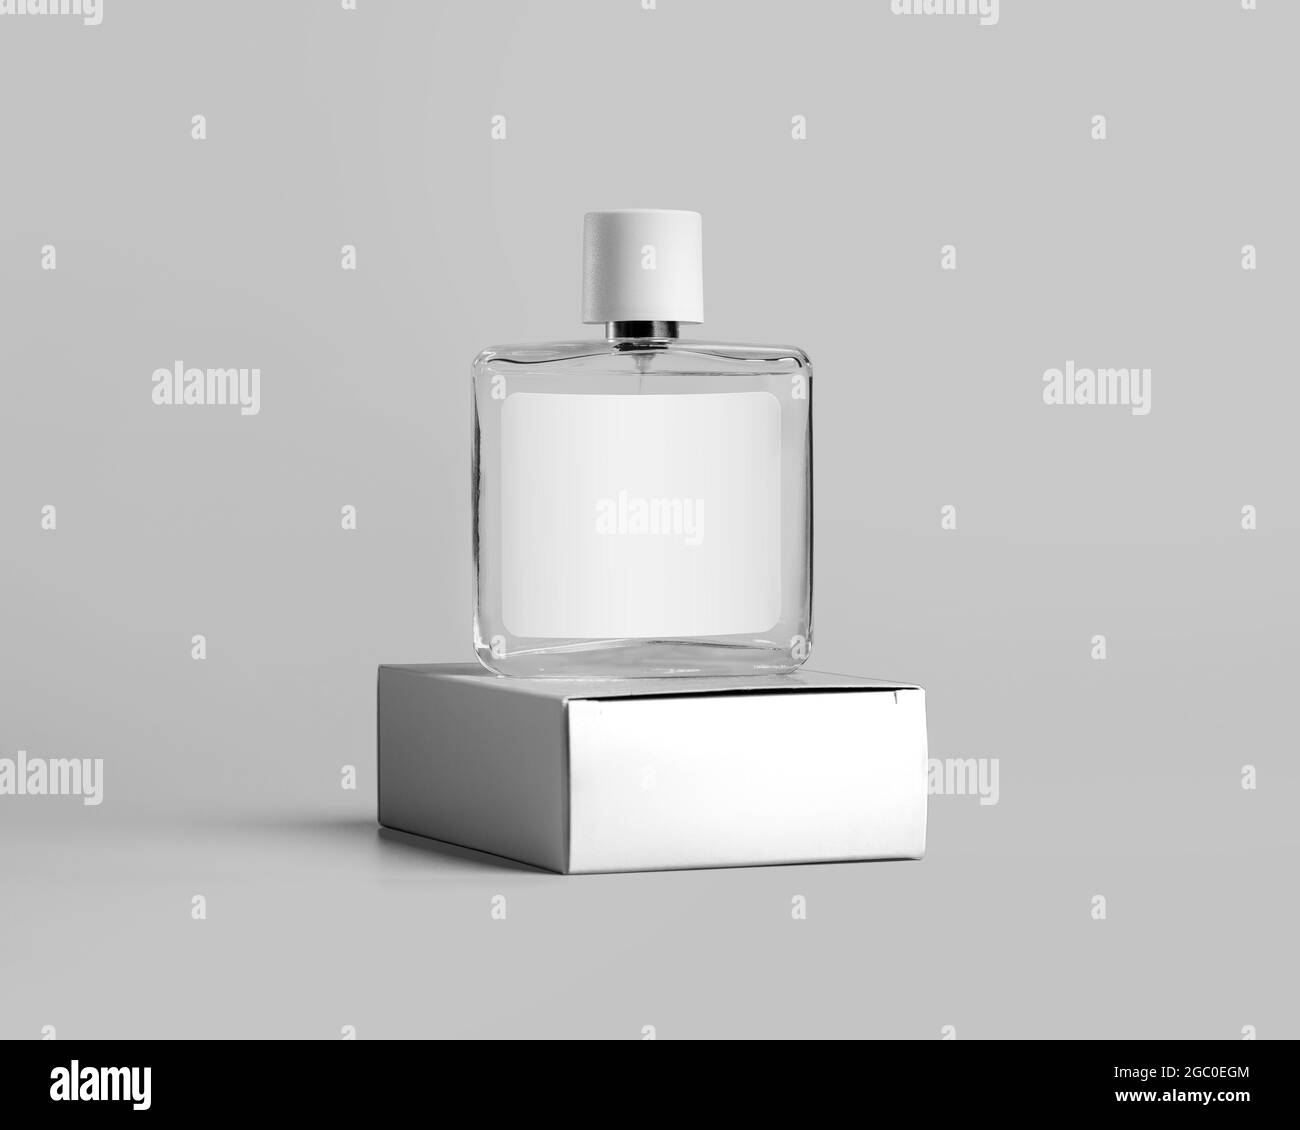 Ein Markenprodukt-Mockup, eine transparente Parfümflasche aus Glas mit  Etikett, steht auf einem Karton mit Platz für Design. Behälterschablone für  Fläschchen wi Stockfotografie - Alamy